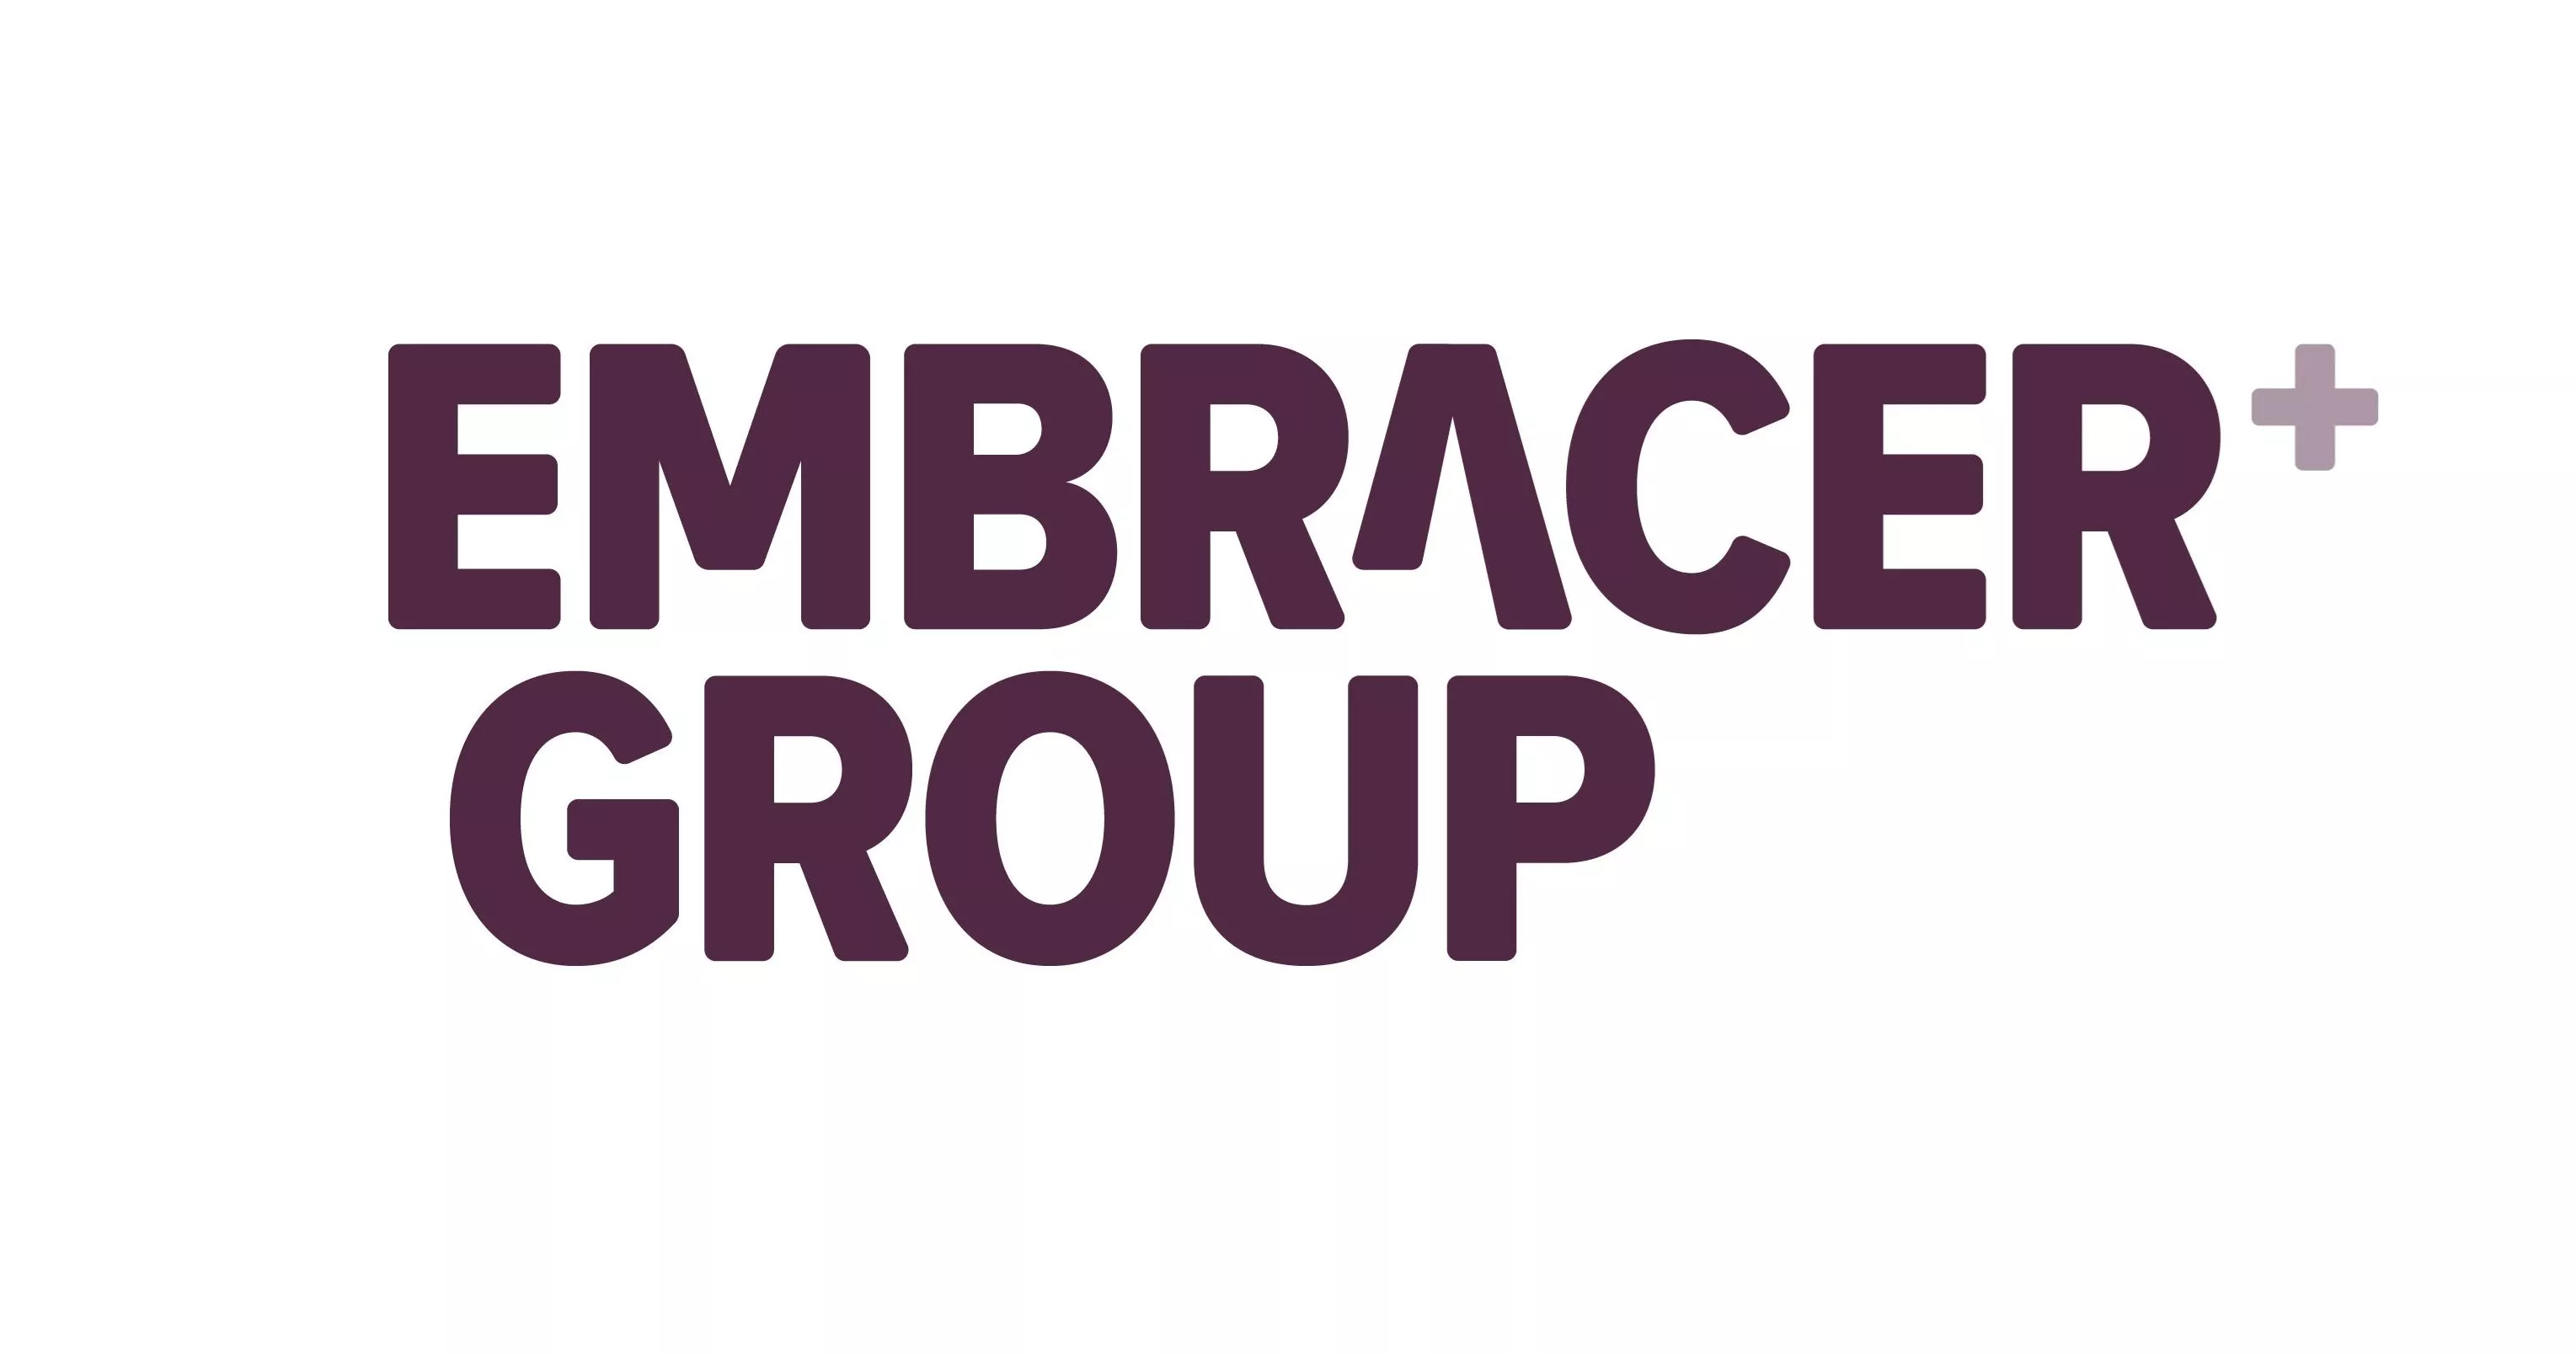 Embracer Group möchten im aktuellen Geschäftsjahr mehr als 70 Spieleprojekte veröffentlichen Heropic